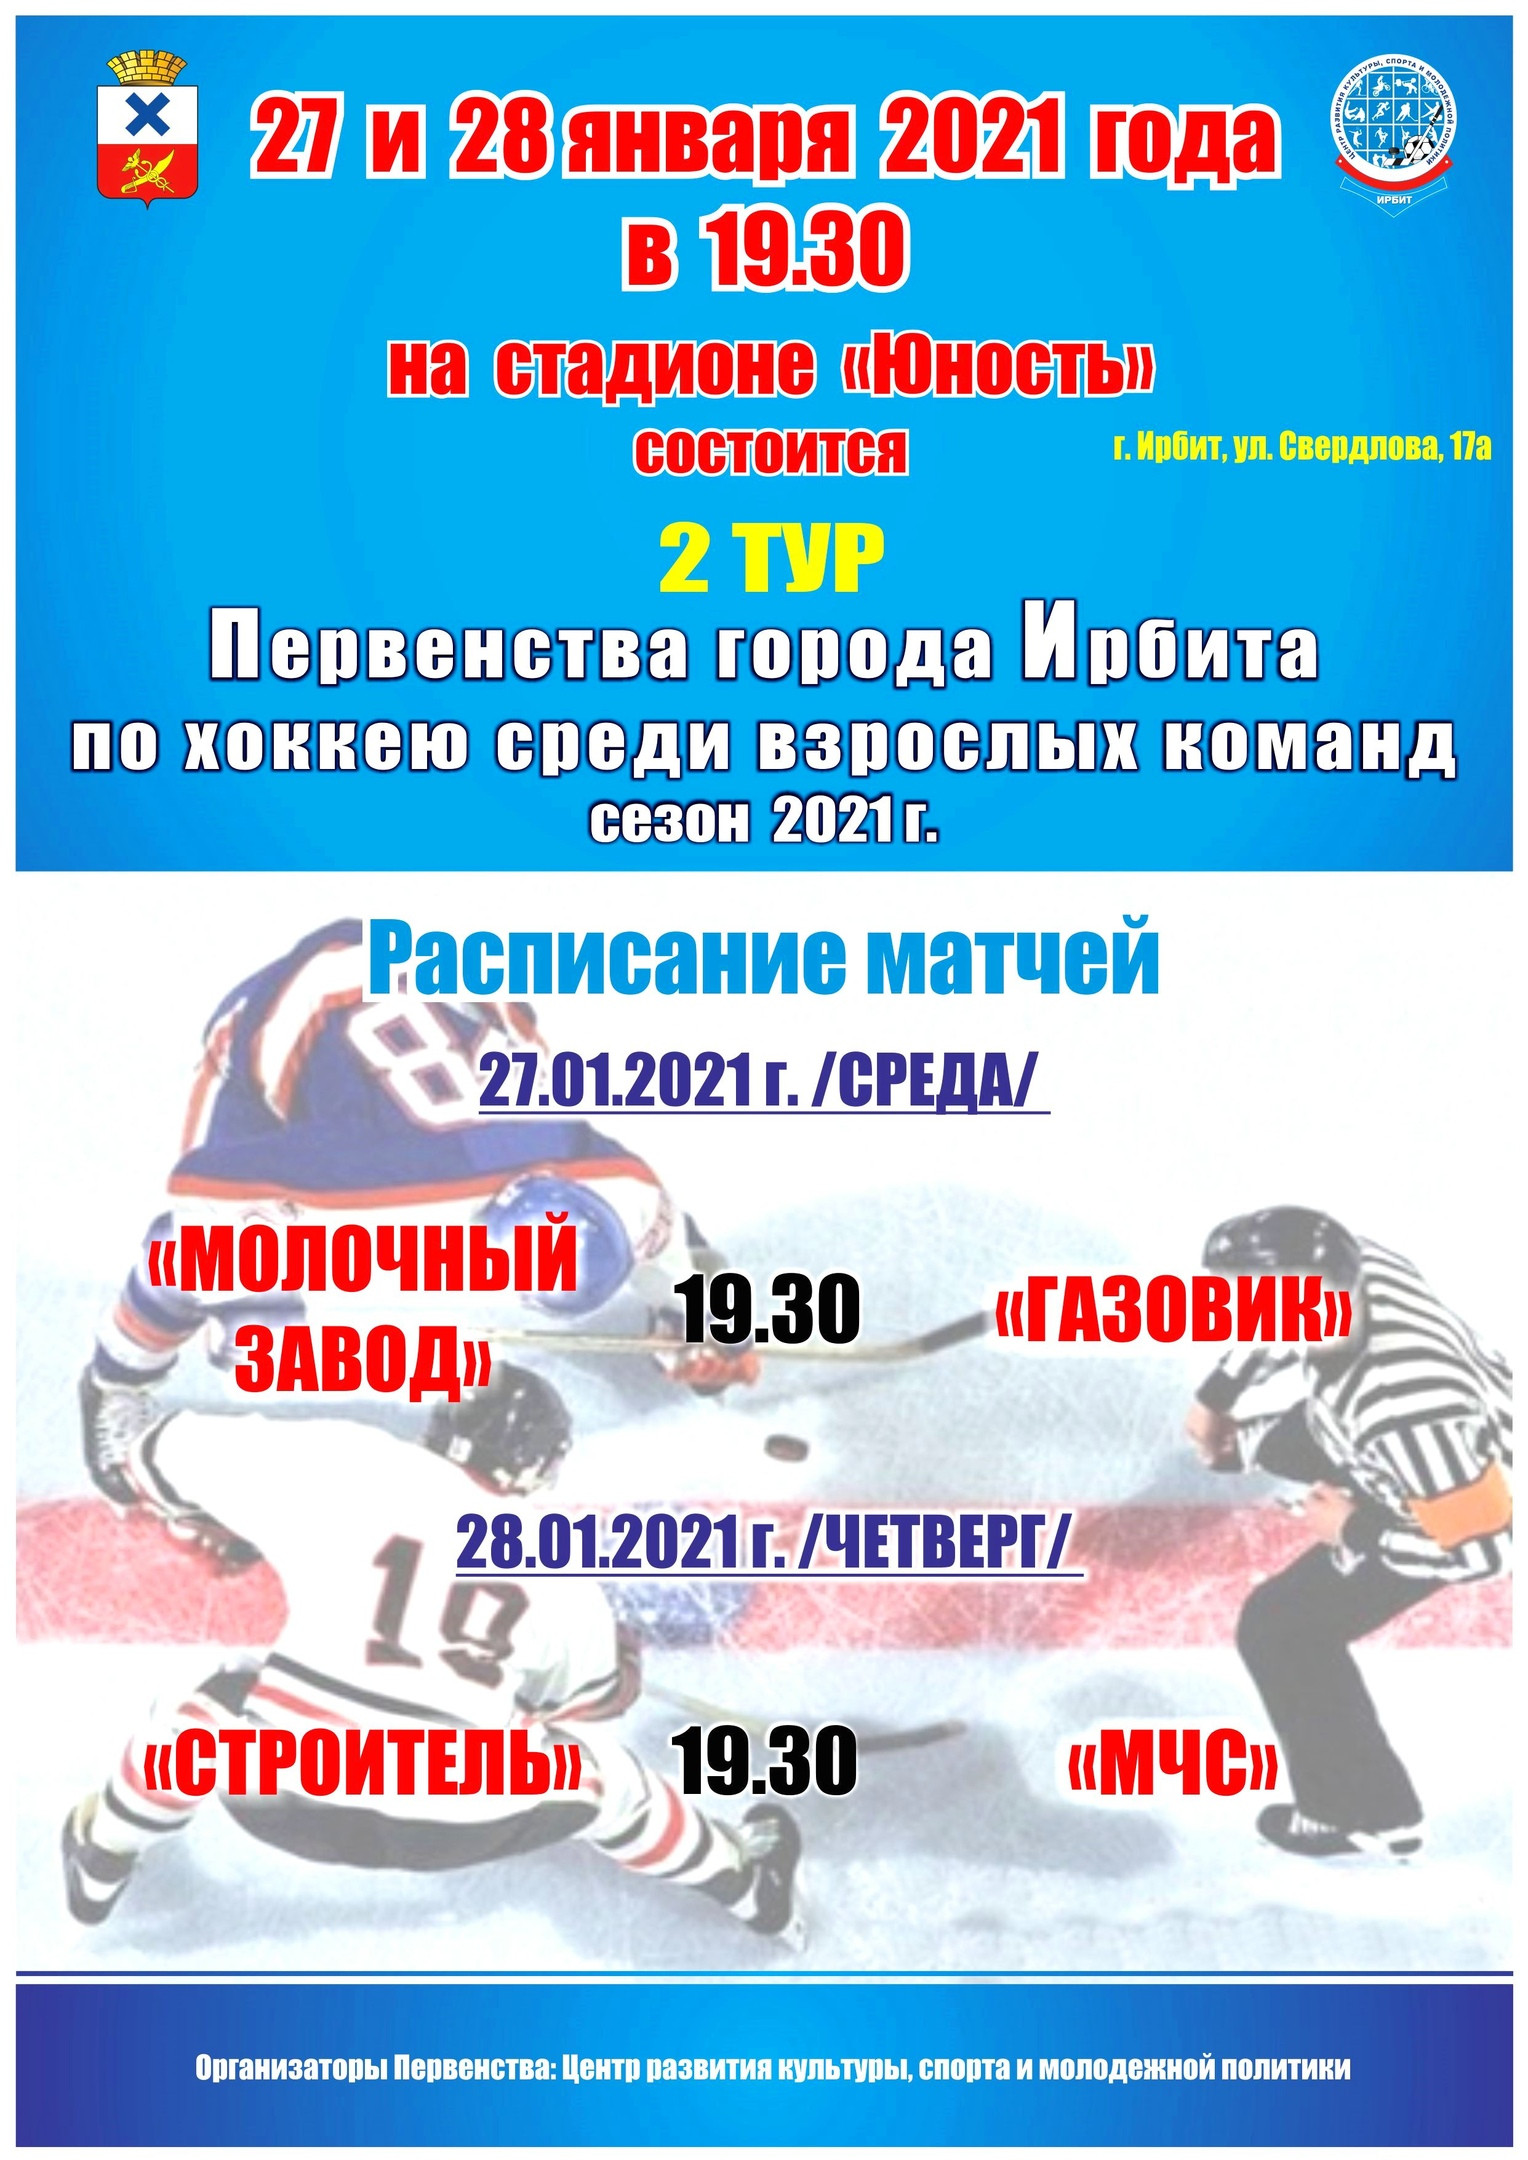 2 тур Первенства города Ирбита по хоккею среди взрослых команд, сезон 2021 г.